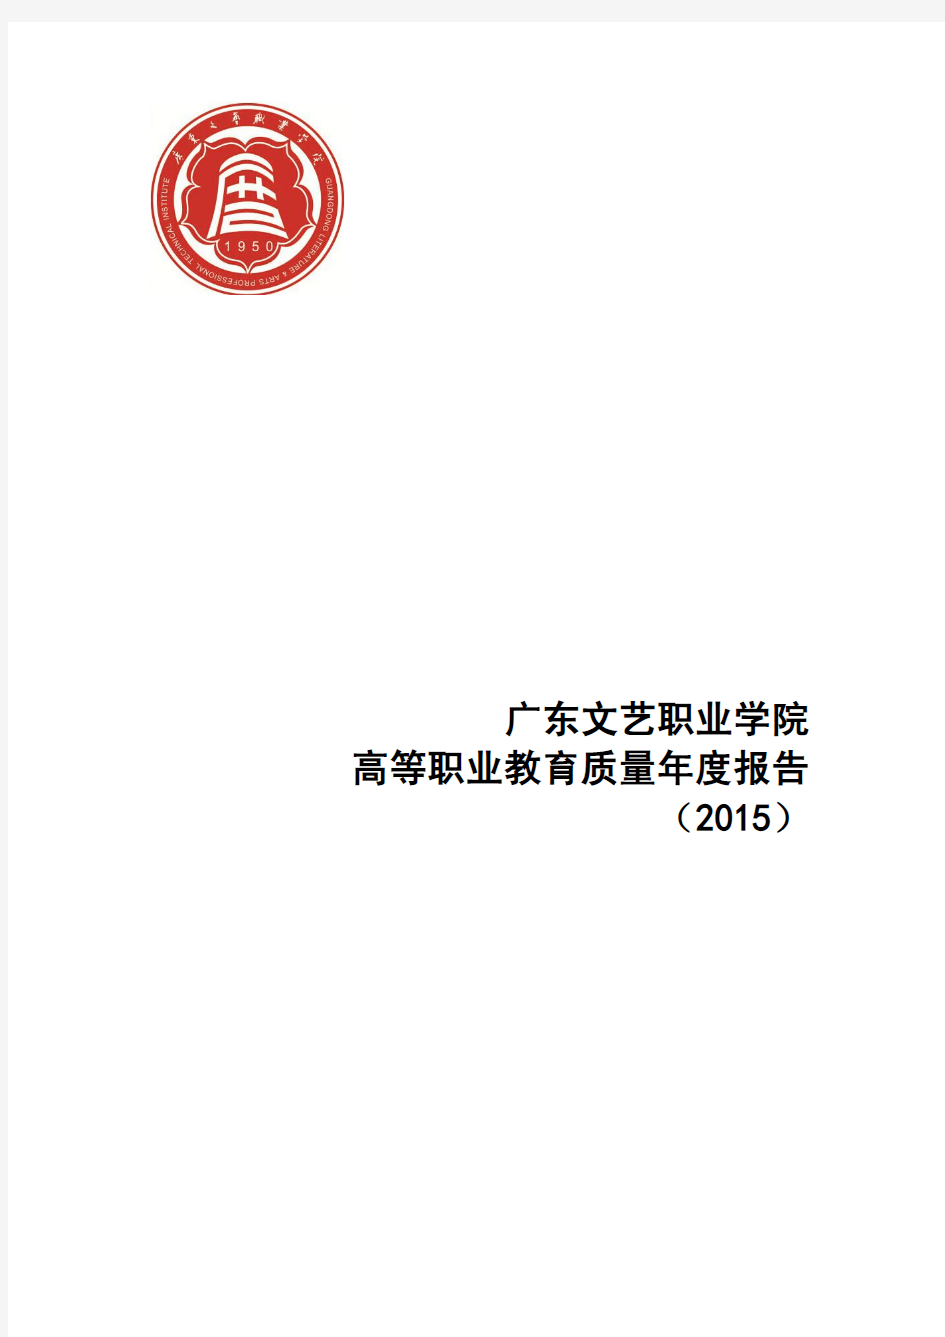 15广东文艺职业学院2015年度教学质量报告